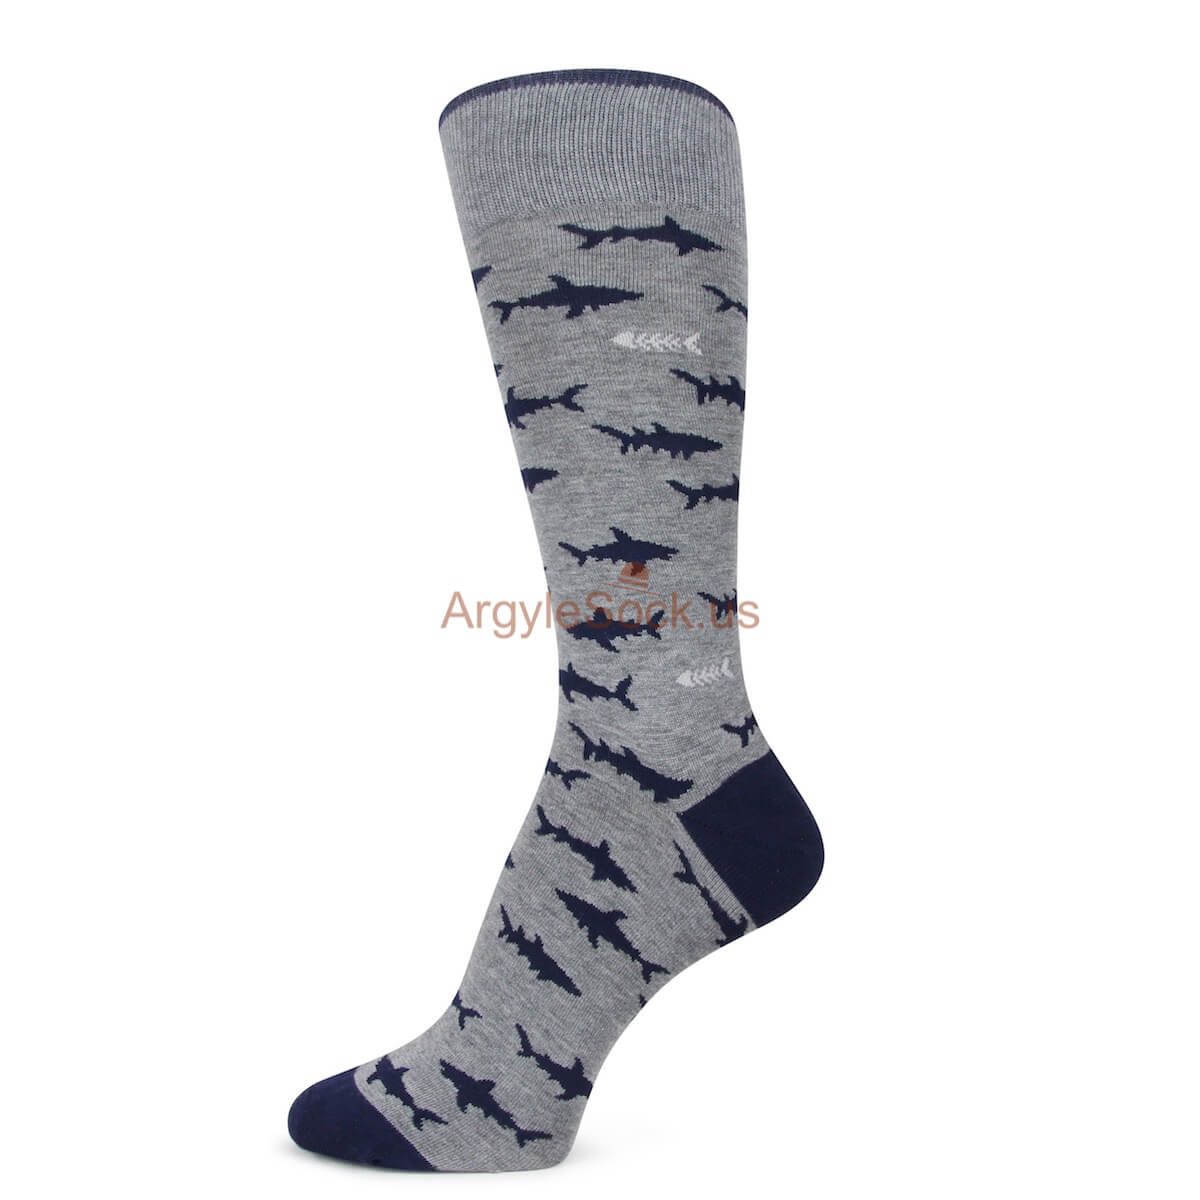 Shark Themed Socks for Men